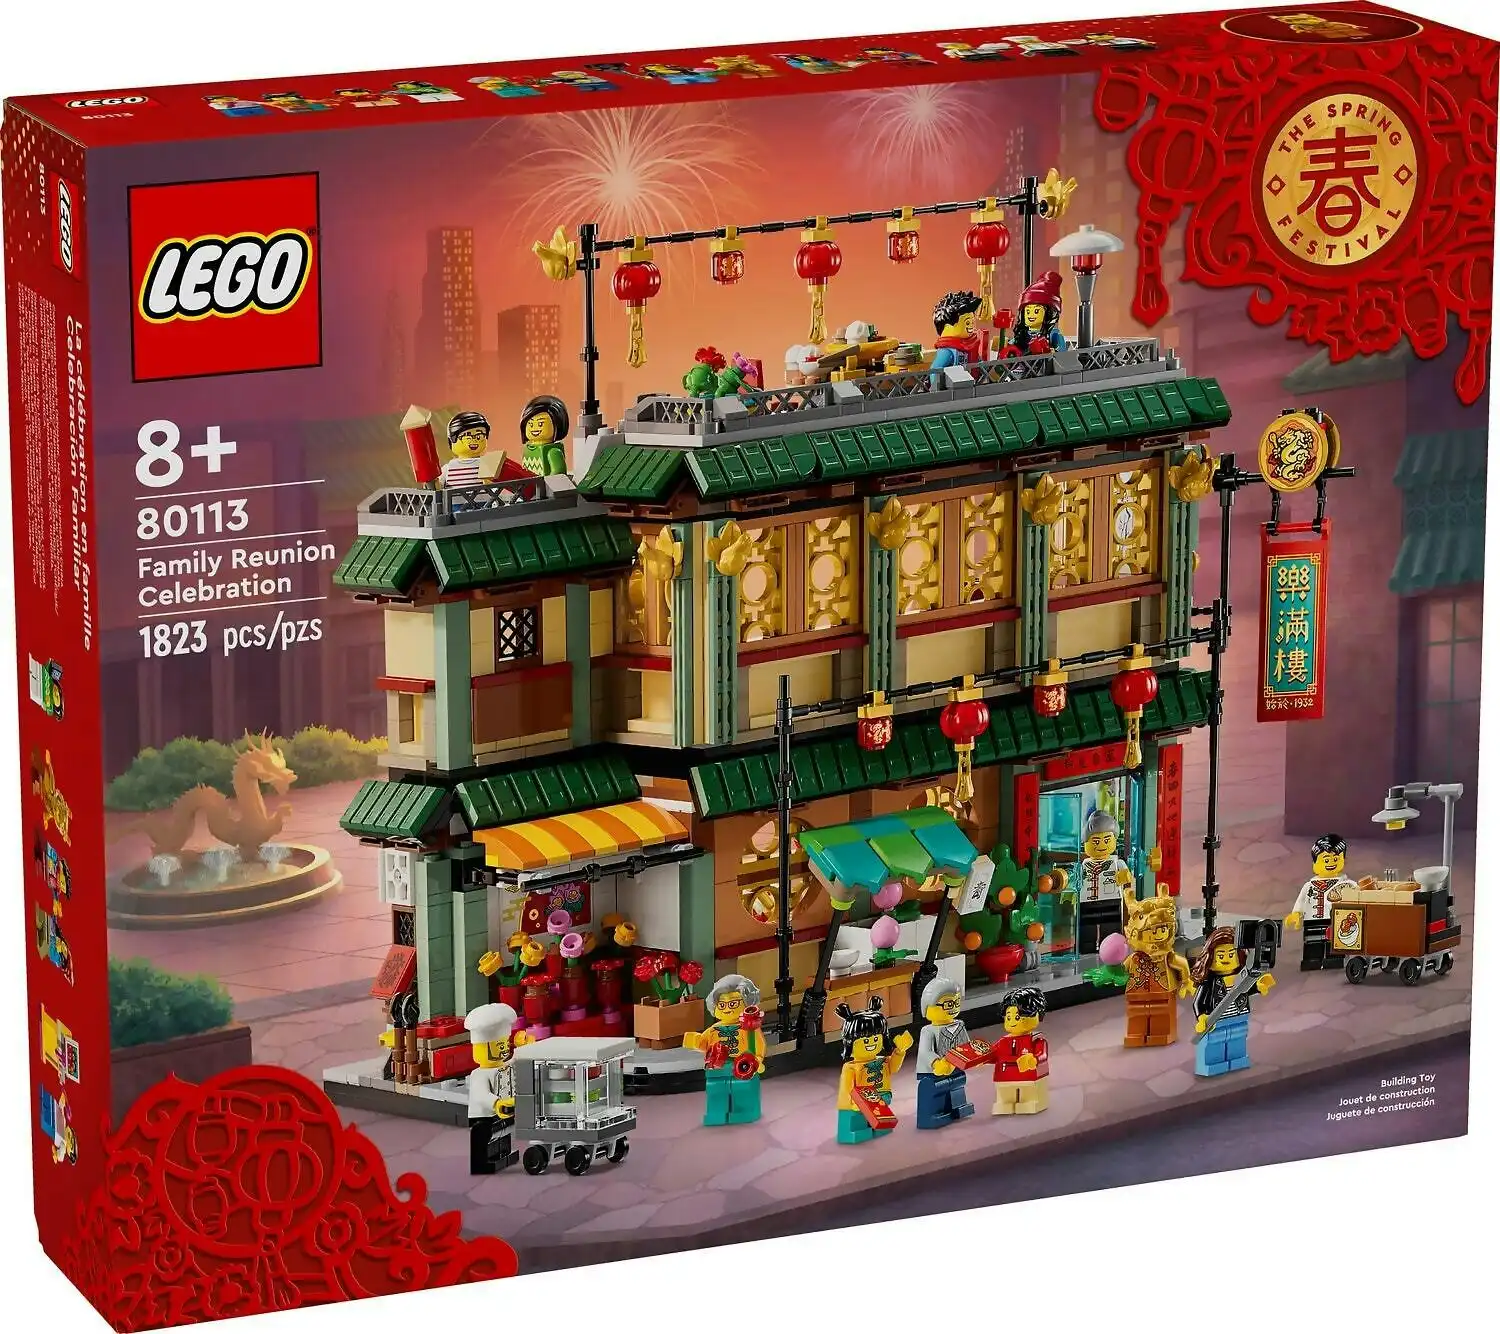 LEGO 80113 Family Reunion Celebration - The Spring Festival